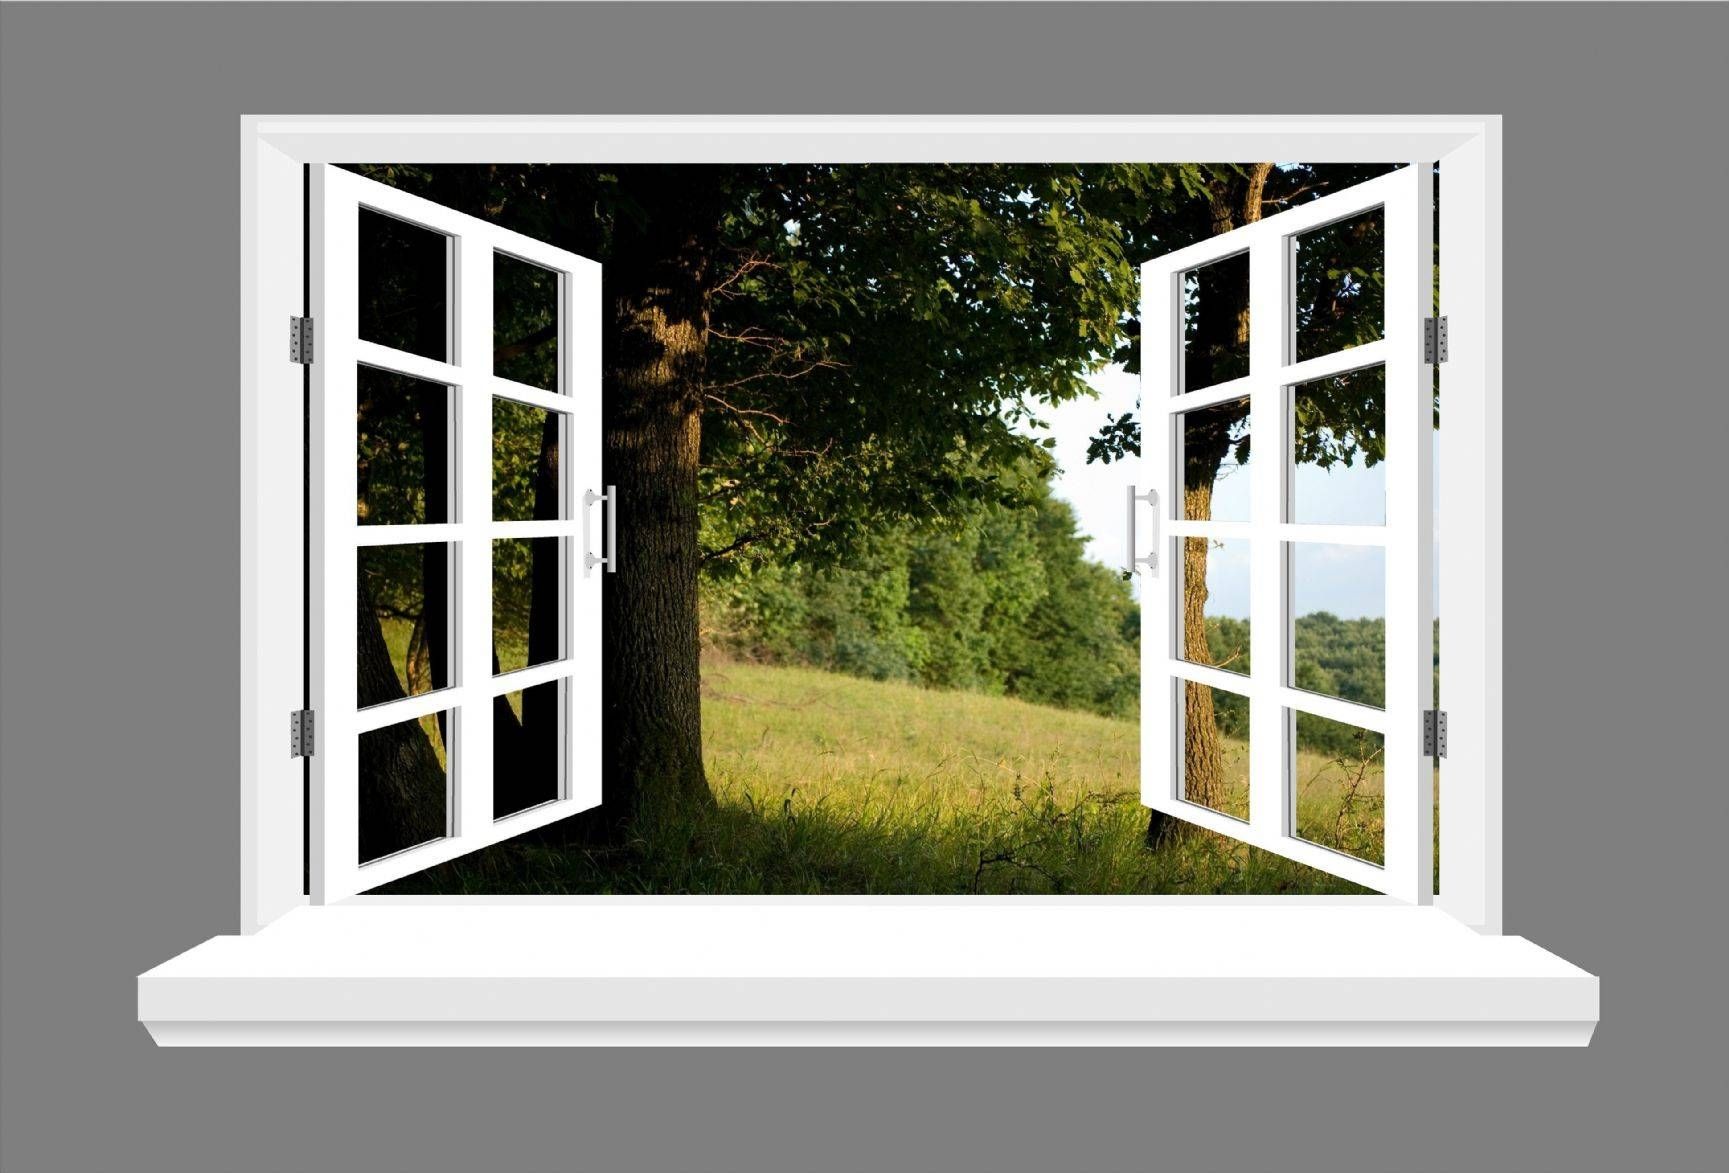 Tree Landscape 3d Window View Wall Art Sticker Throughout 2018 3d Wall Art Window (Gallery 1 of 20)